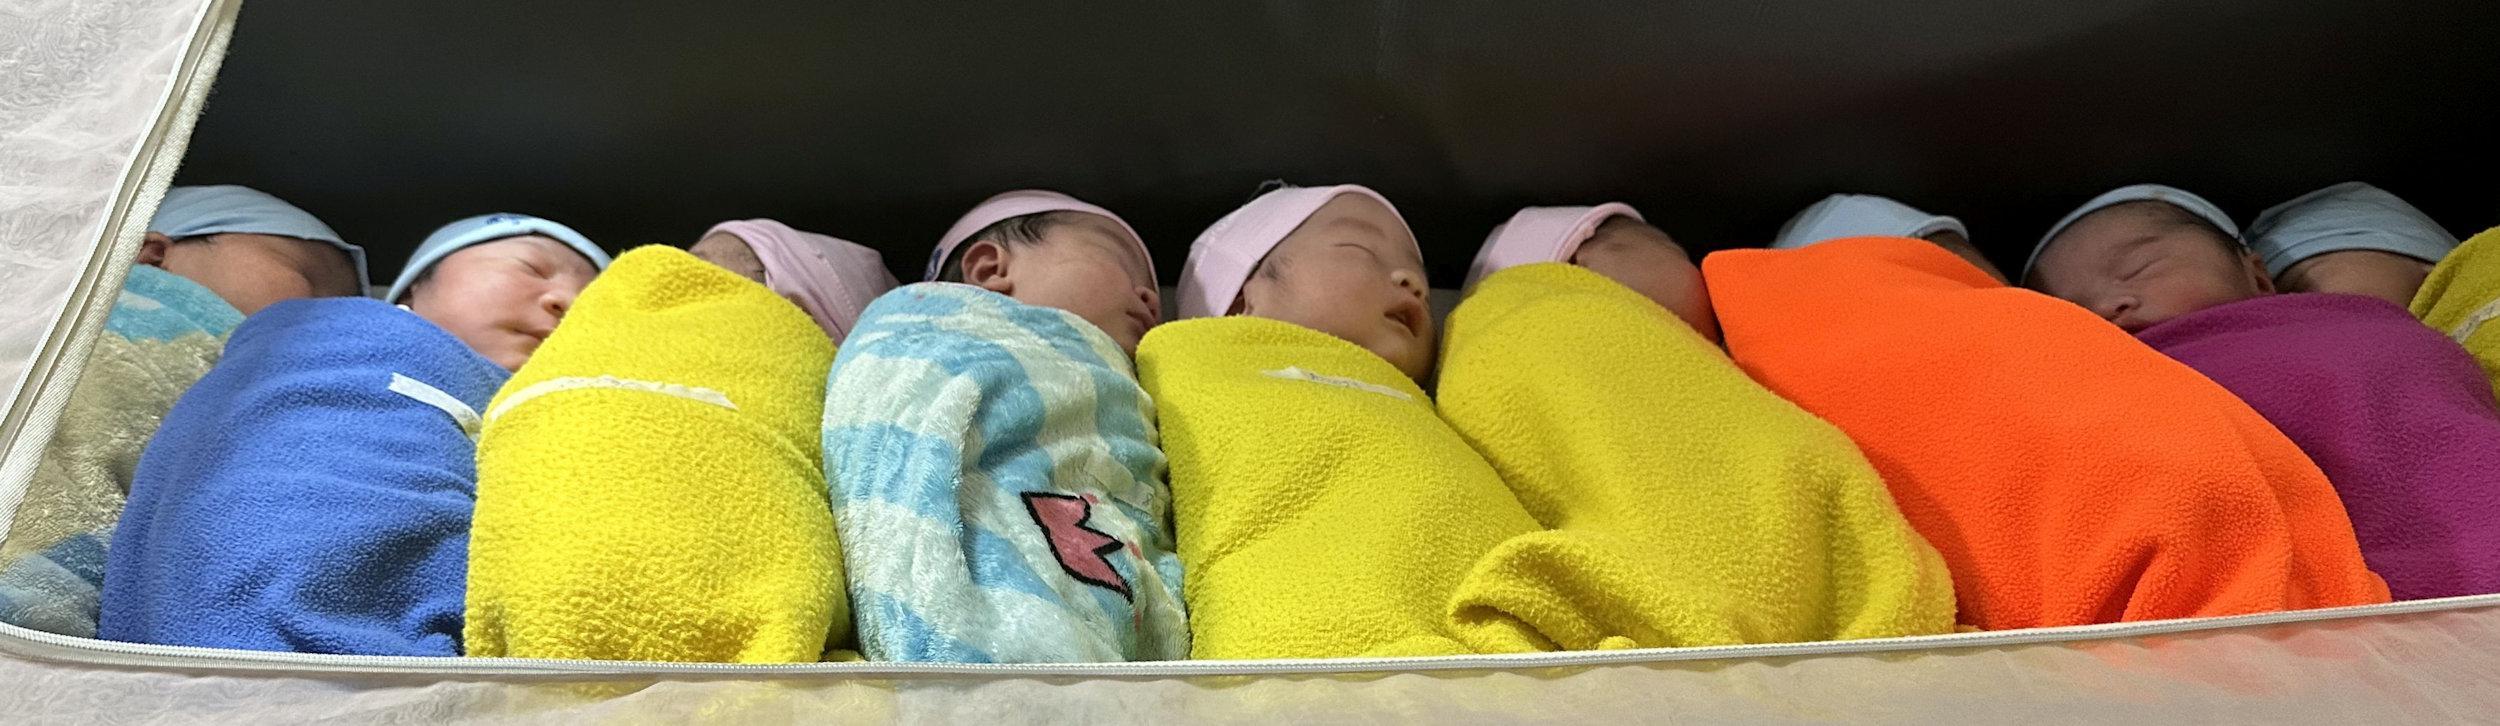 Newborn babies in Vietnam